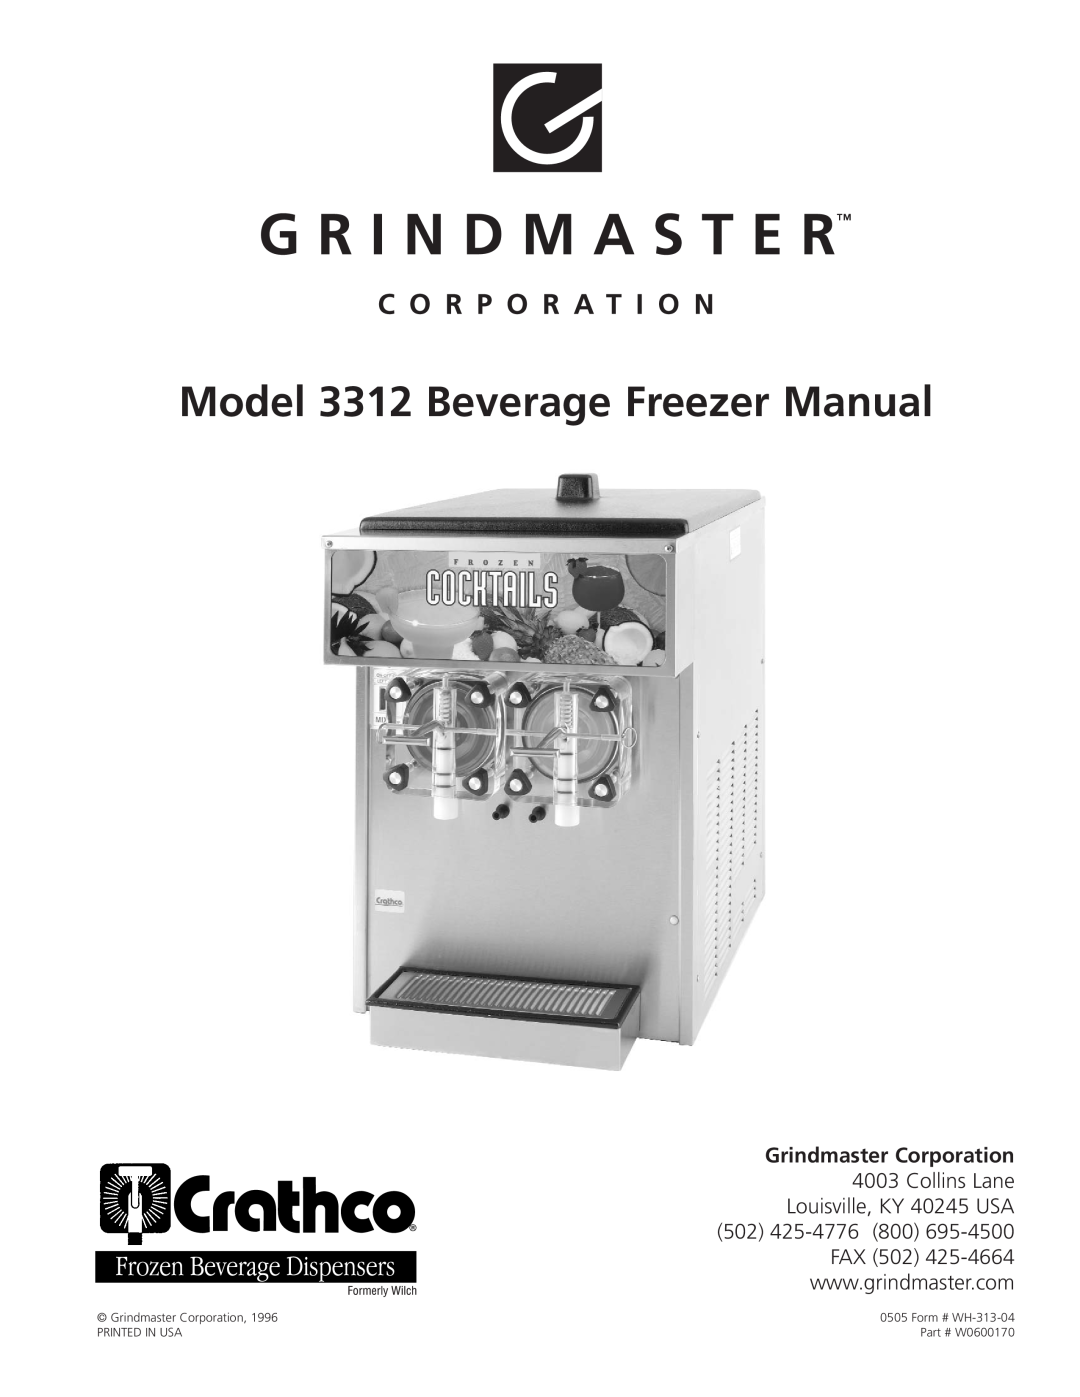 Grindmaster 3311 manual Model 3312 Beverage Freezer Manual, Grindmaster Corporation, W0600170 